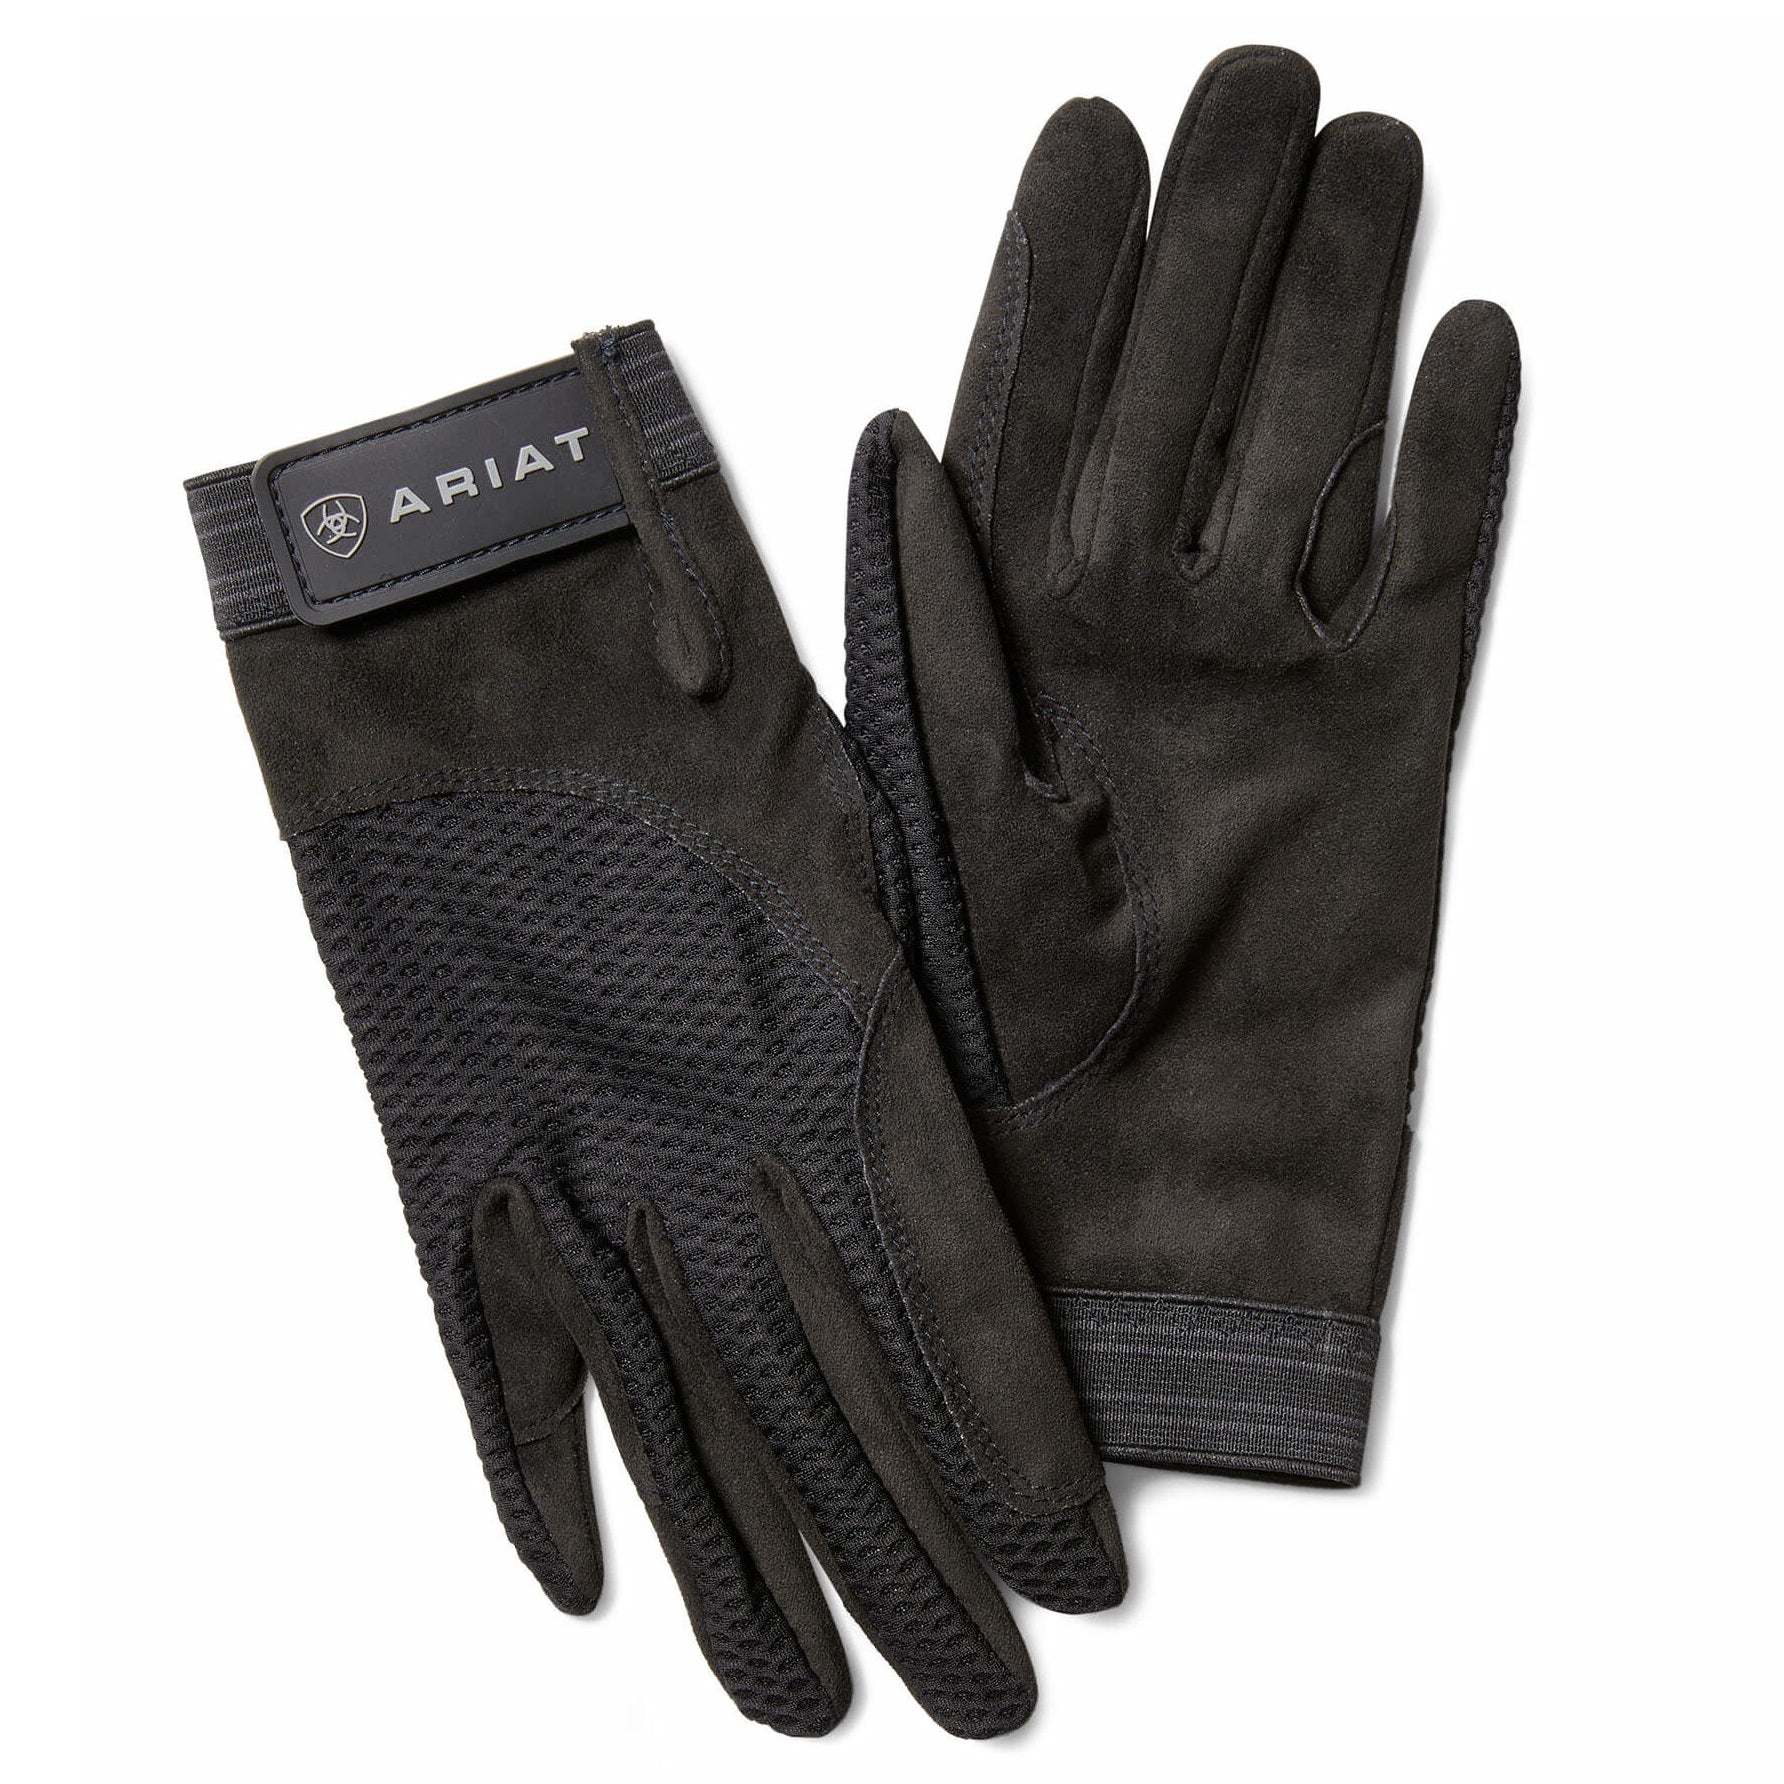 ARIAT Air Grip Riding Gloves - Black